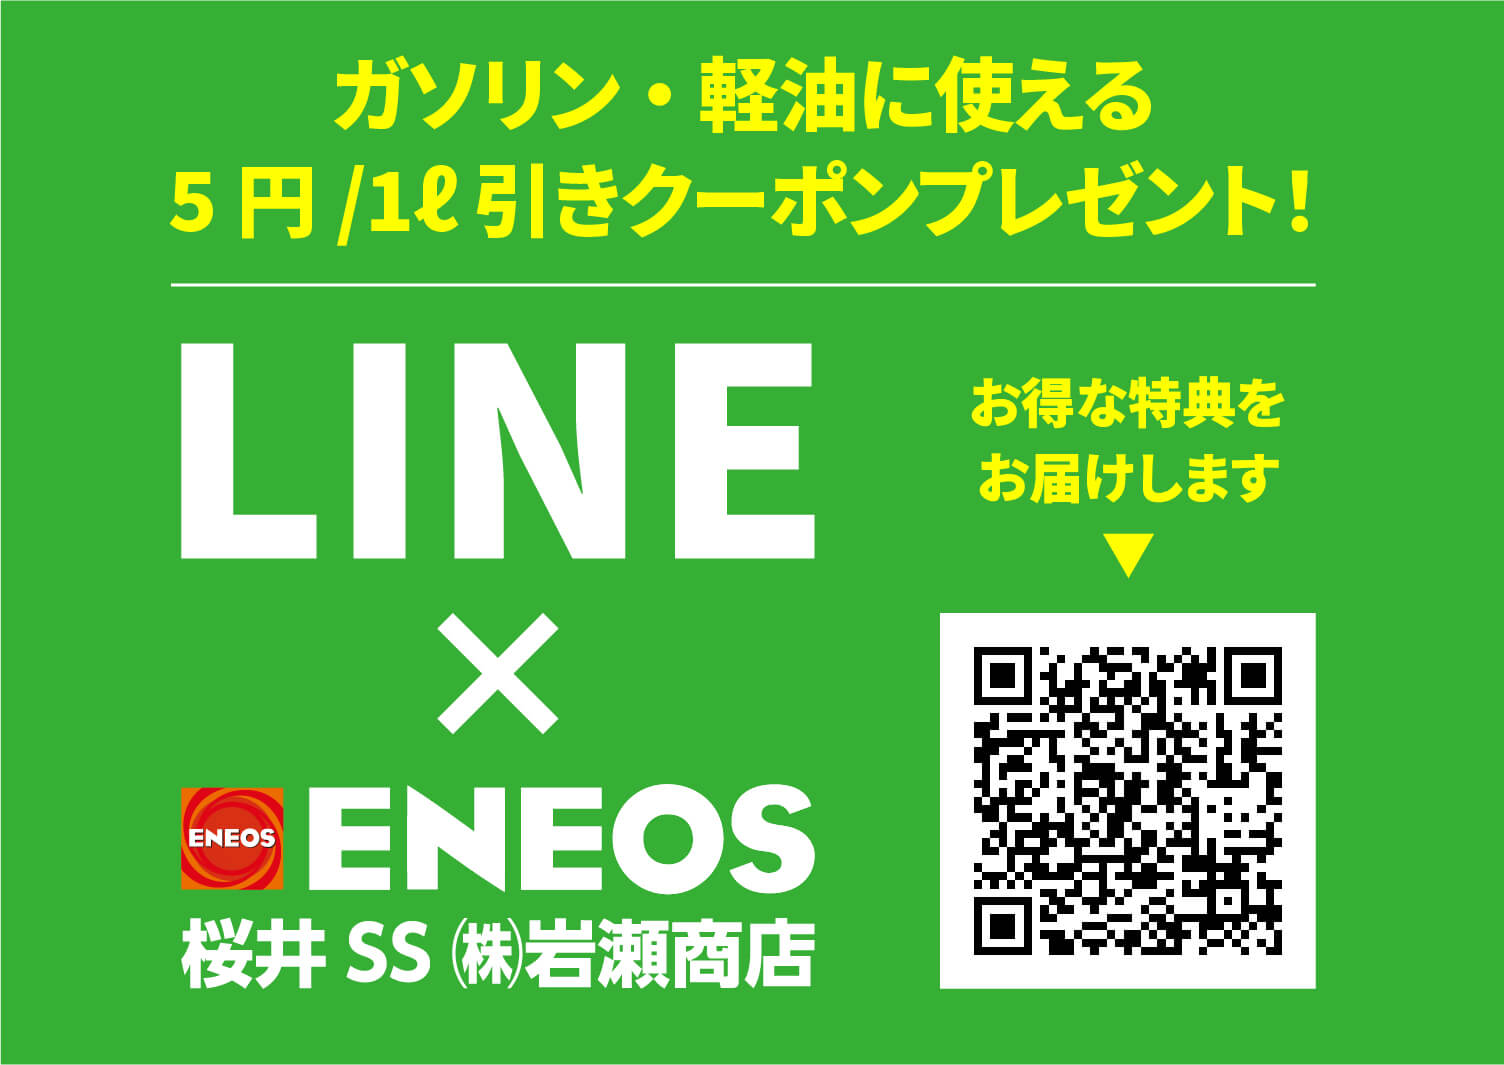 Line×ENEOS 桜井SS(株)岩瀬商店 お得な特典をお届けします